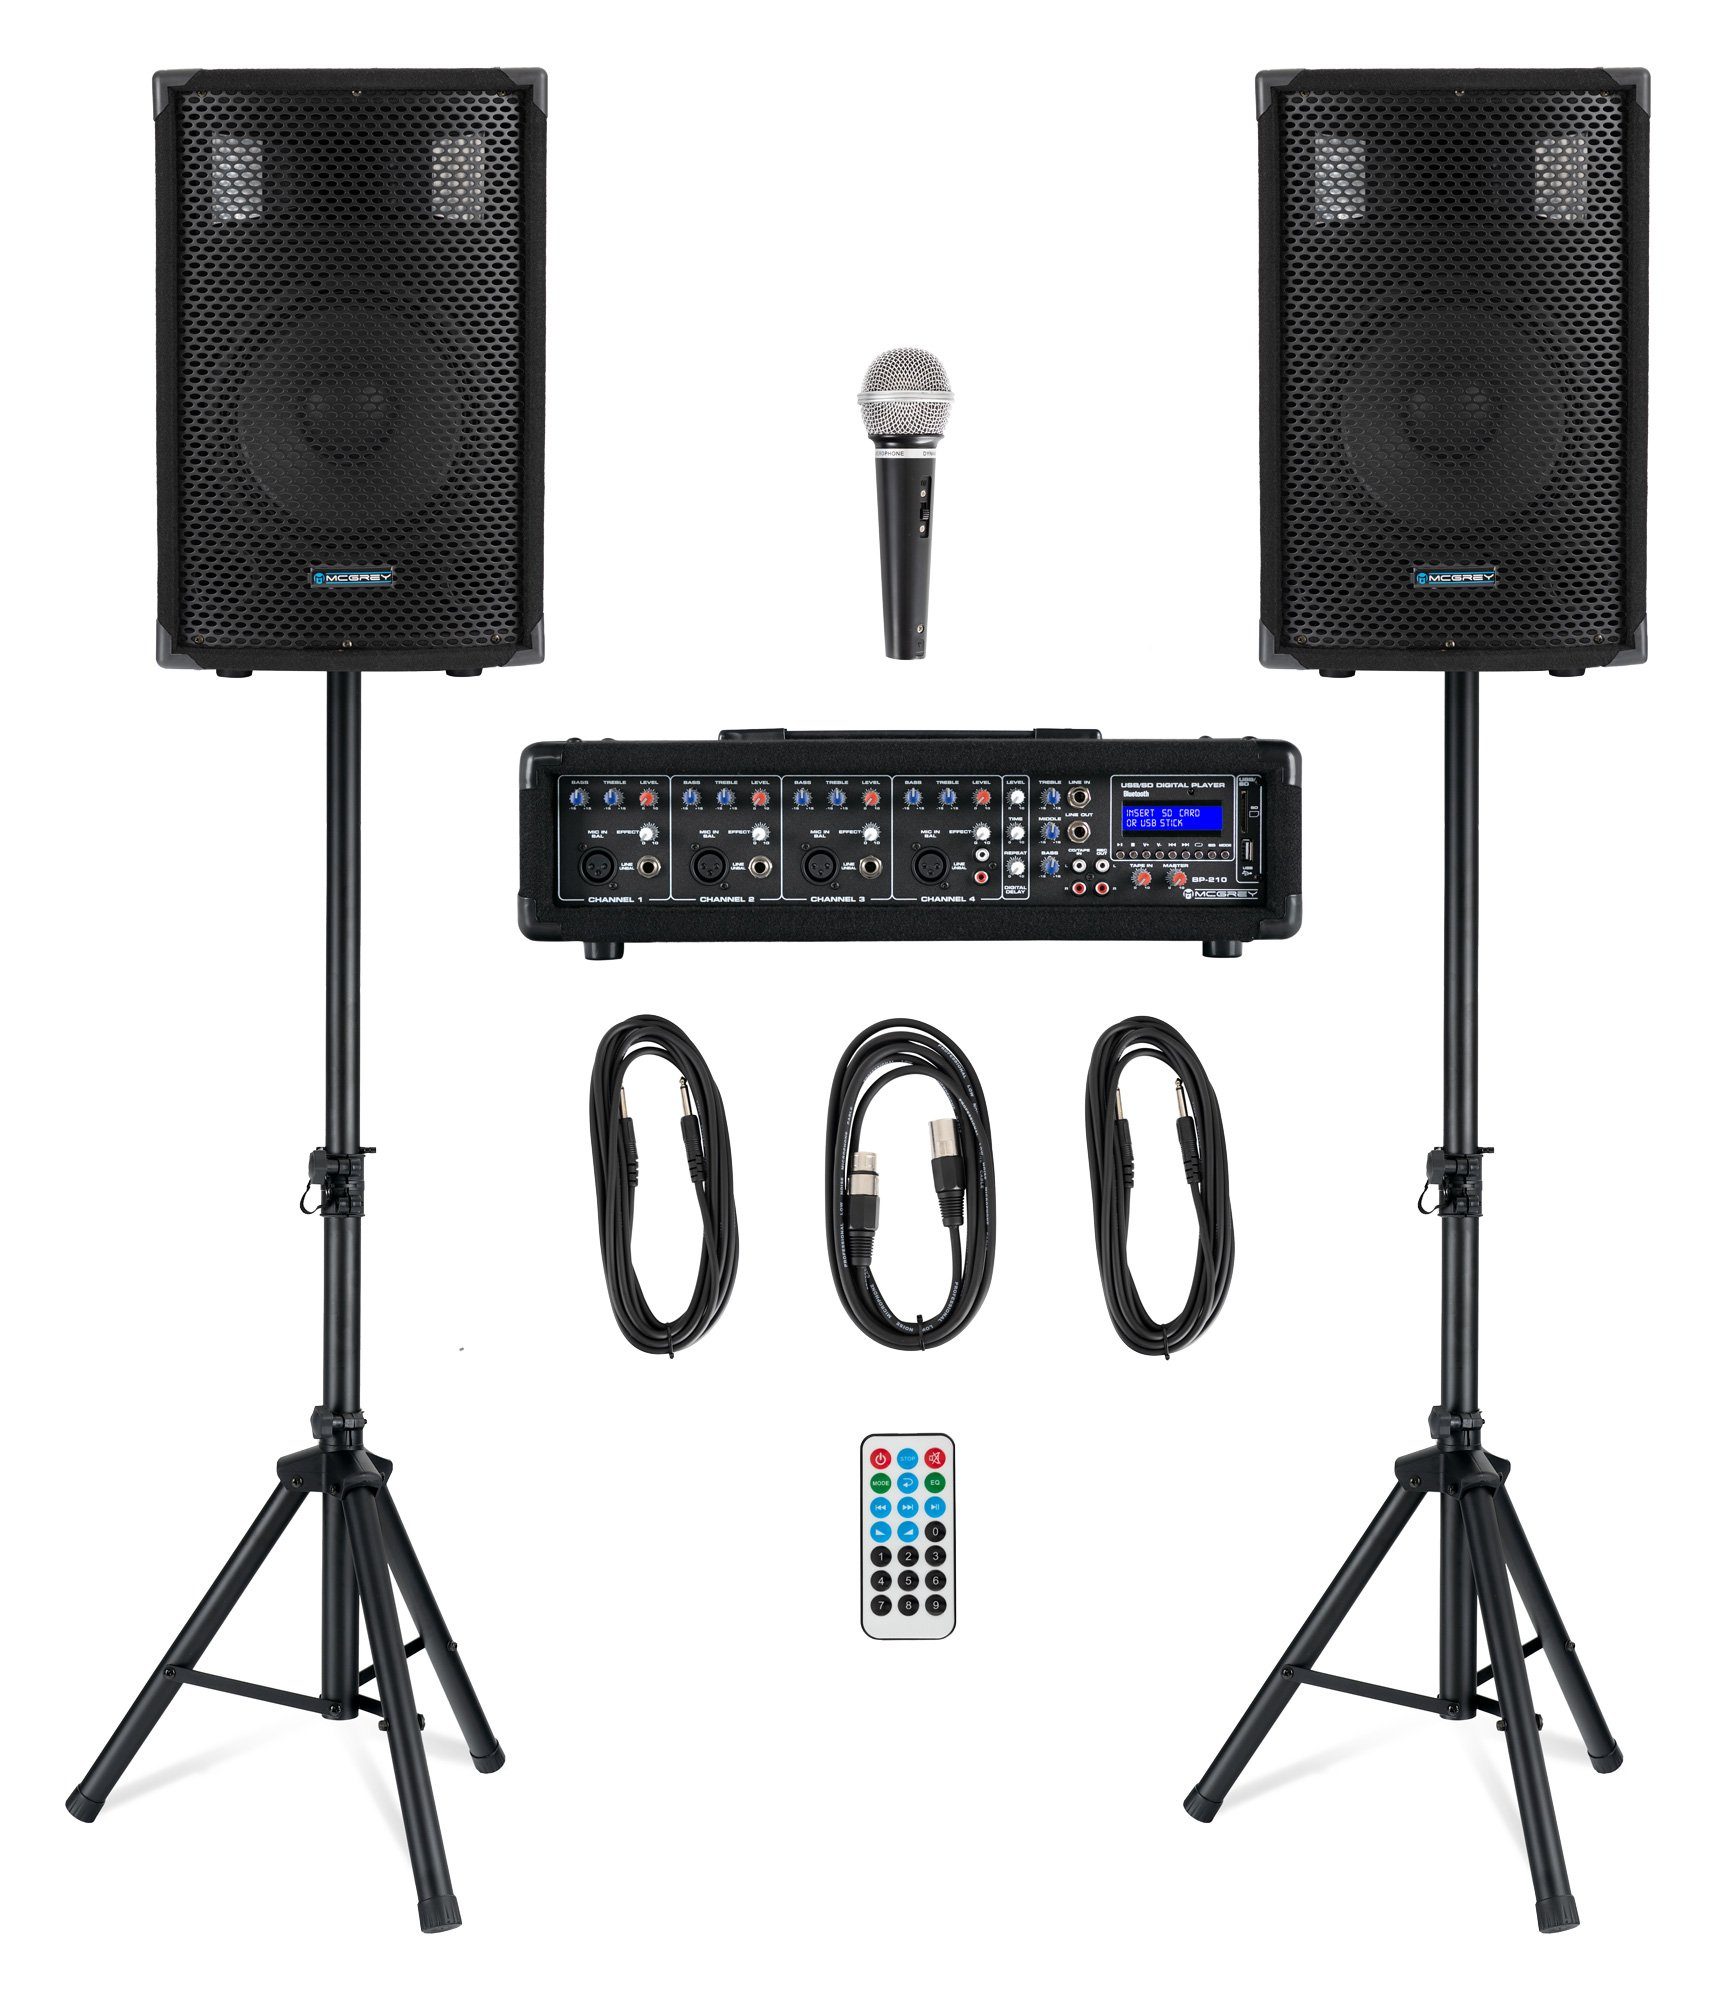 McGrey BP-210 Bandpack PA-Anlage - 4-Kanal Powermixer - digitaler Hall -  Bluetooth - USB/SD-Slot - 2-Wege-Lautsprecher mit 10" Woofer und Horn -  Inklusive Mikrofon, Stative und Kabel - 100 Watt Lautsprechersystem (100 W)